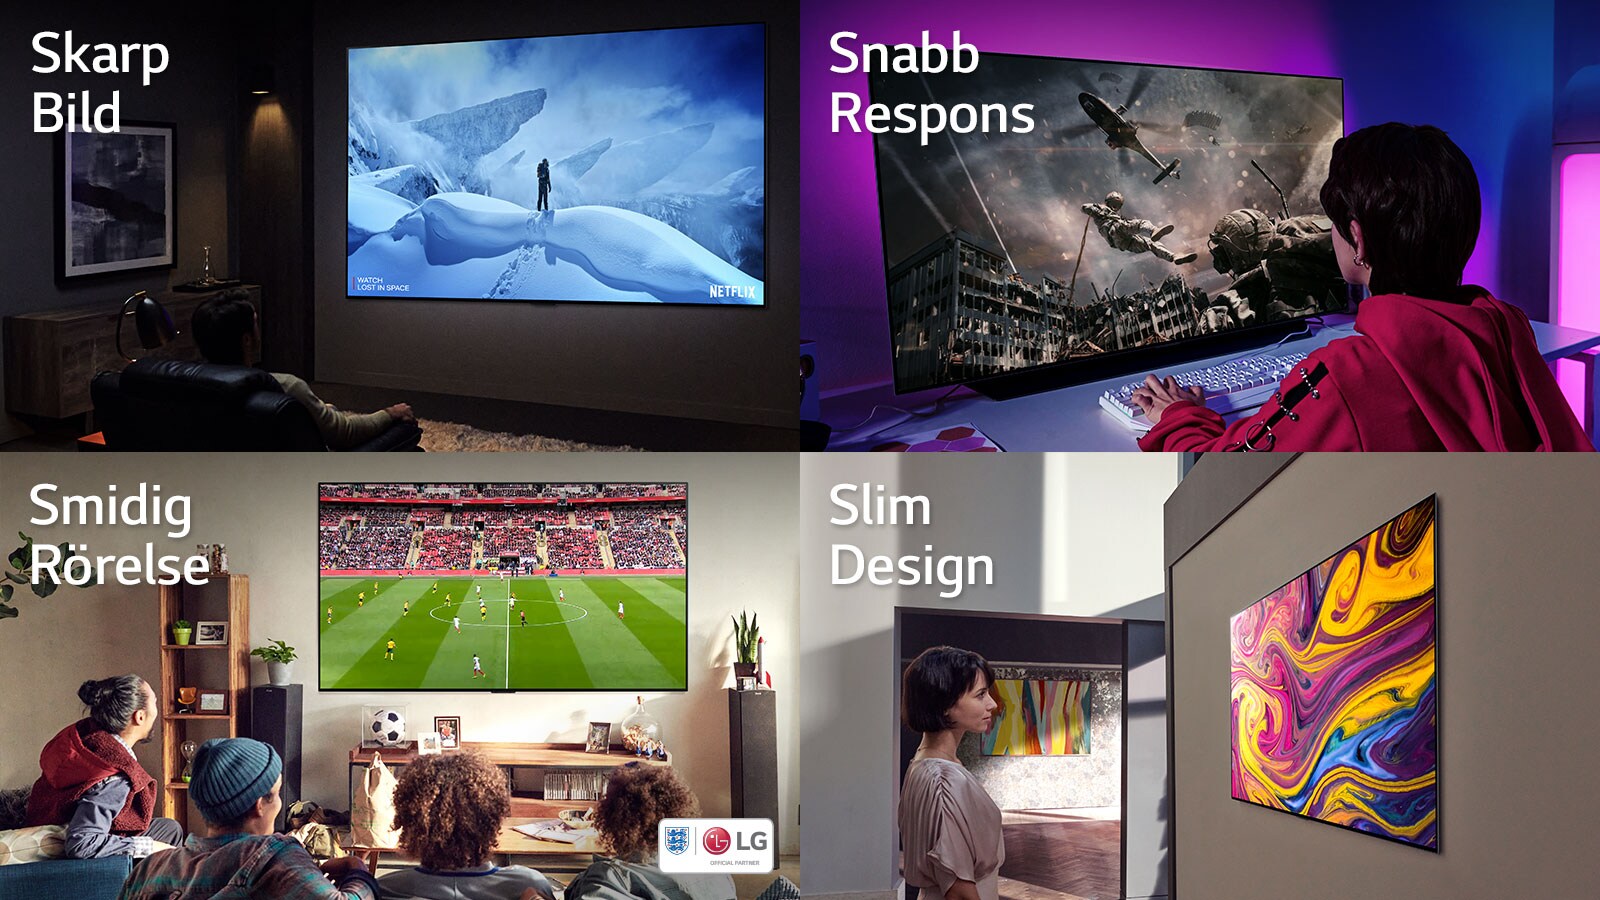 LG OLED TVs med fyra olika exempel: Skarp bild, Snabb respons, Smidig rörelse och Slim design. 